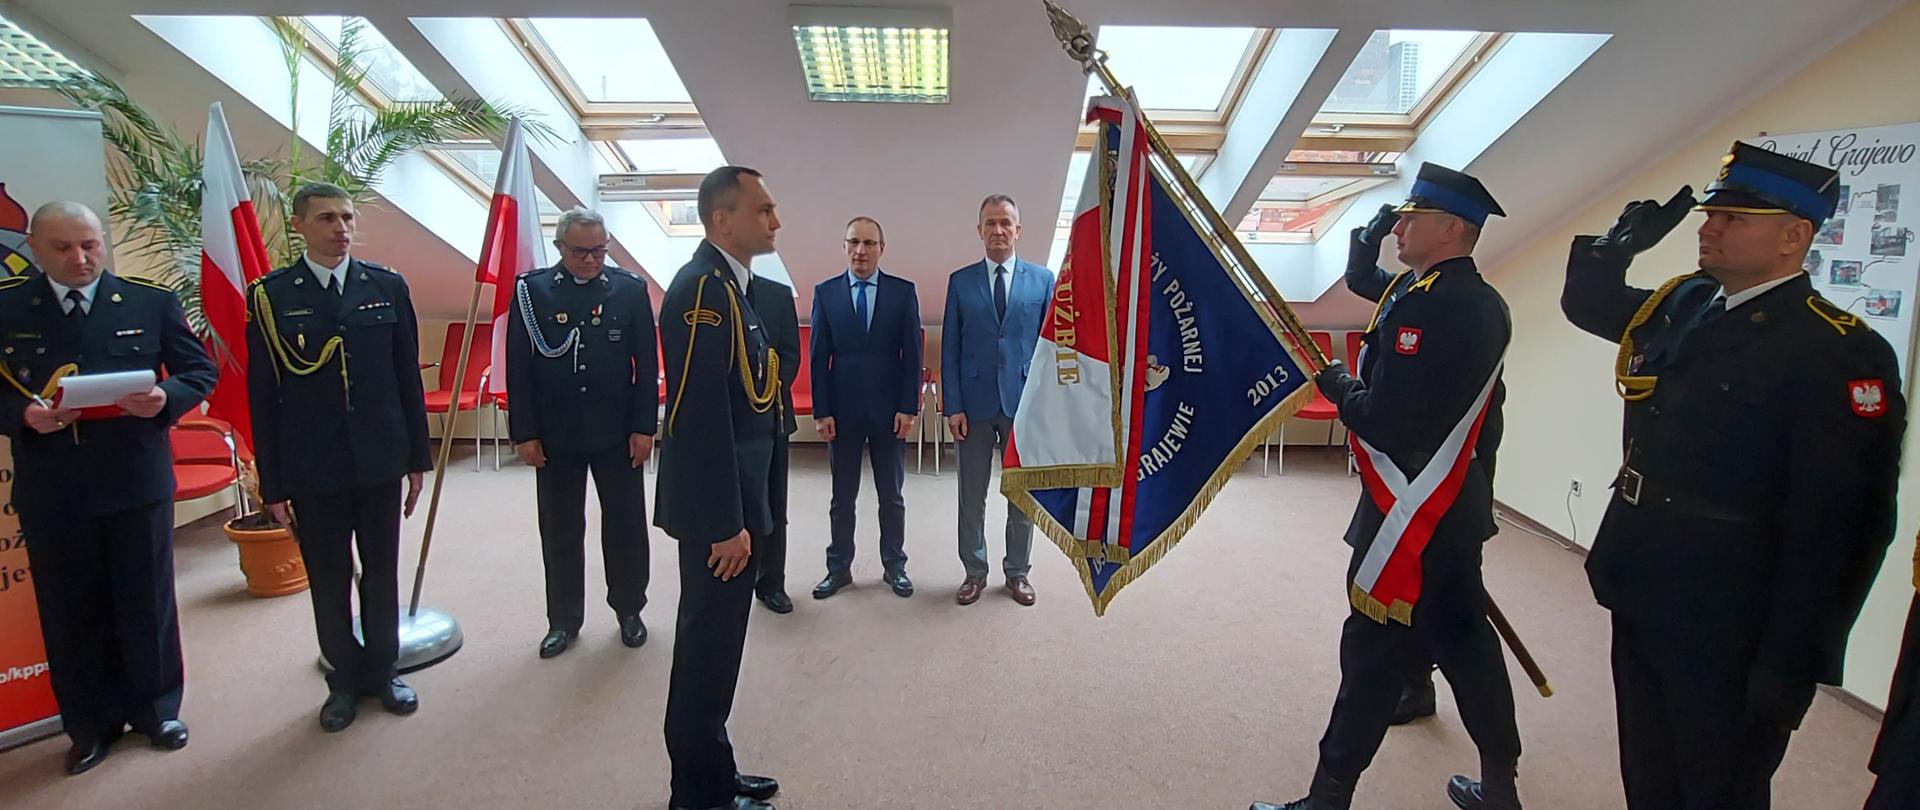 Nowy zastępca komendanta powiatowego PSP w Grajewie kpt. Jarosław Szeszko wita się ze sztandarem komendy. W tle stoją funkcjonariusze oraz zaproszeni goście. 